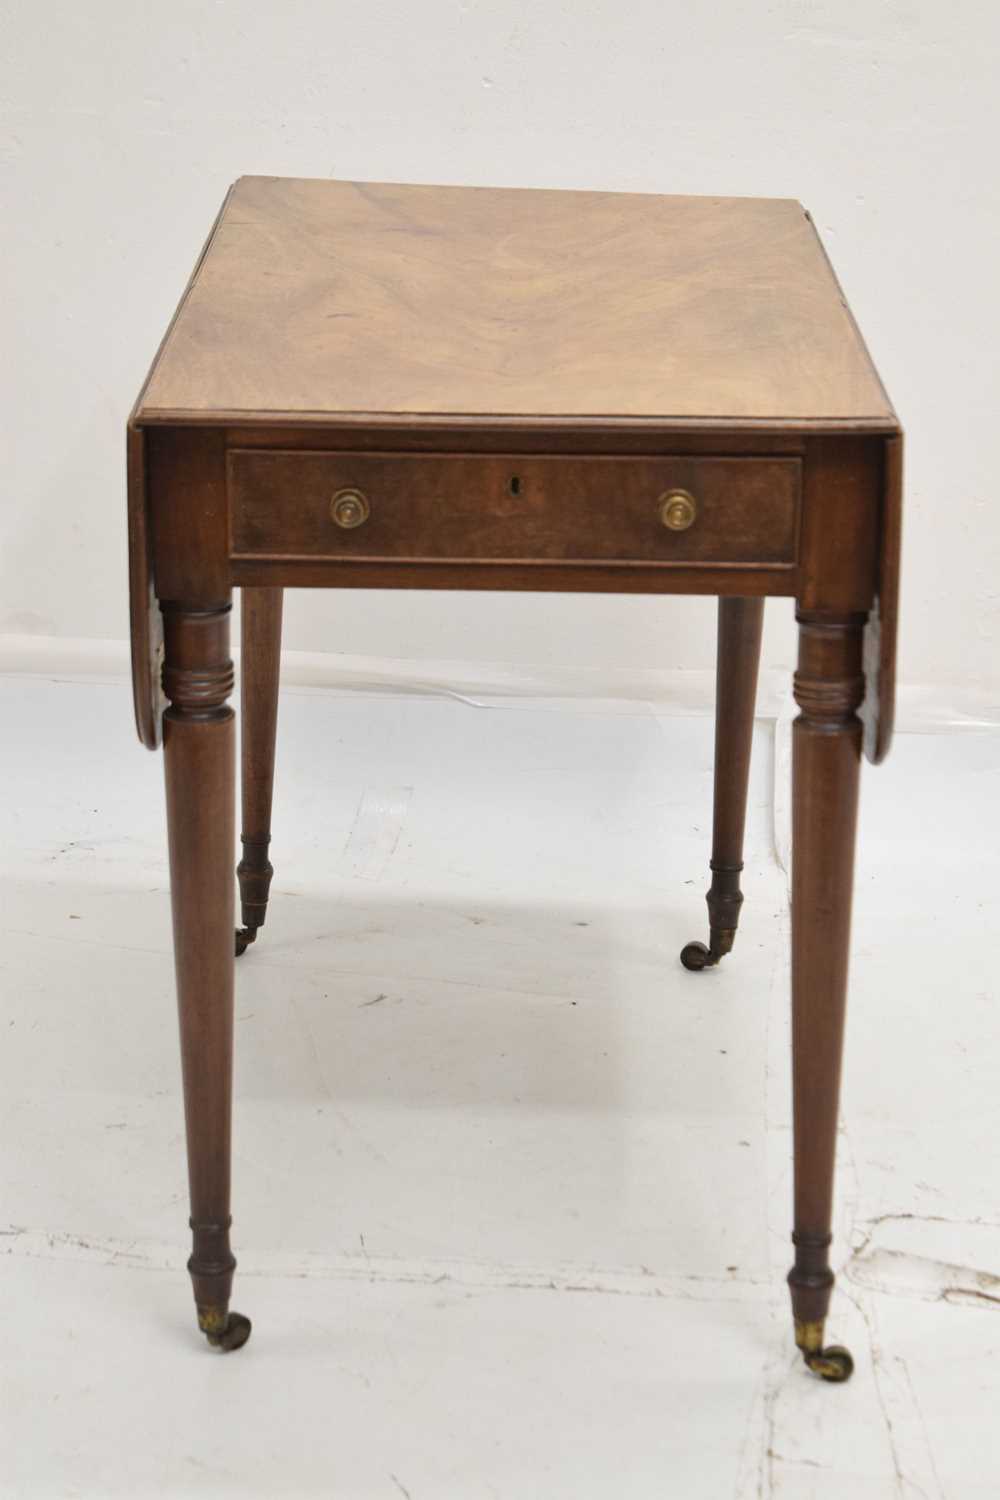 Early 19th century mahogany Pembroke table - Image 2 of 7